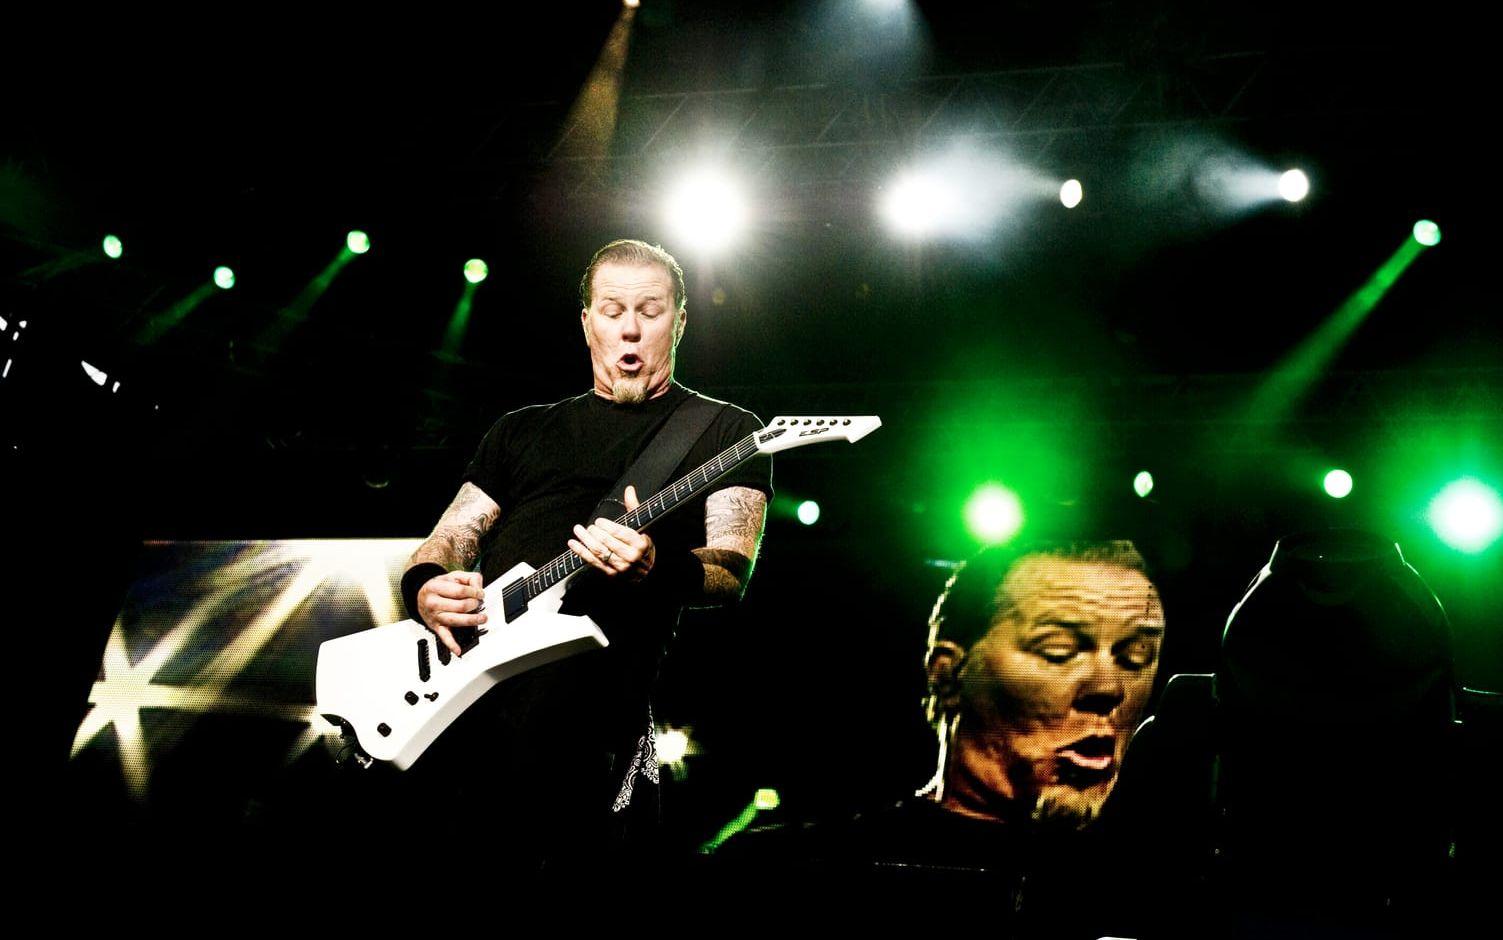 2011. Metallica spelade igen, nu i sällskap av Anthrax, Megadeth och Slayer. BILD: Emelie Asplund